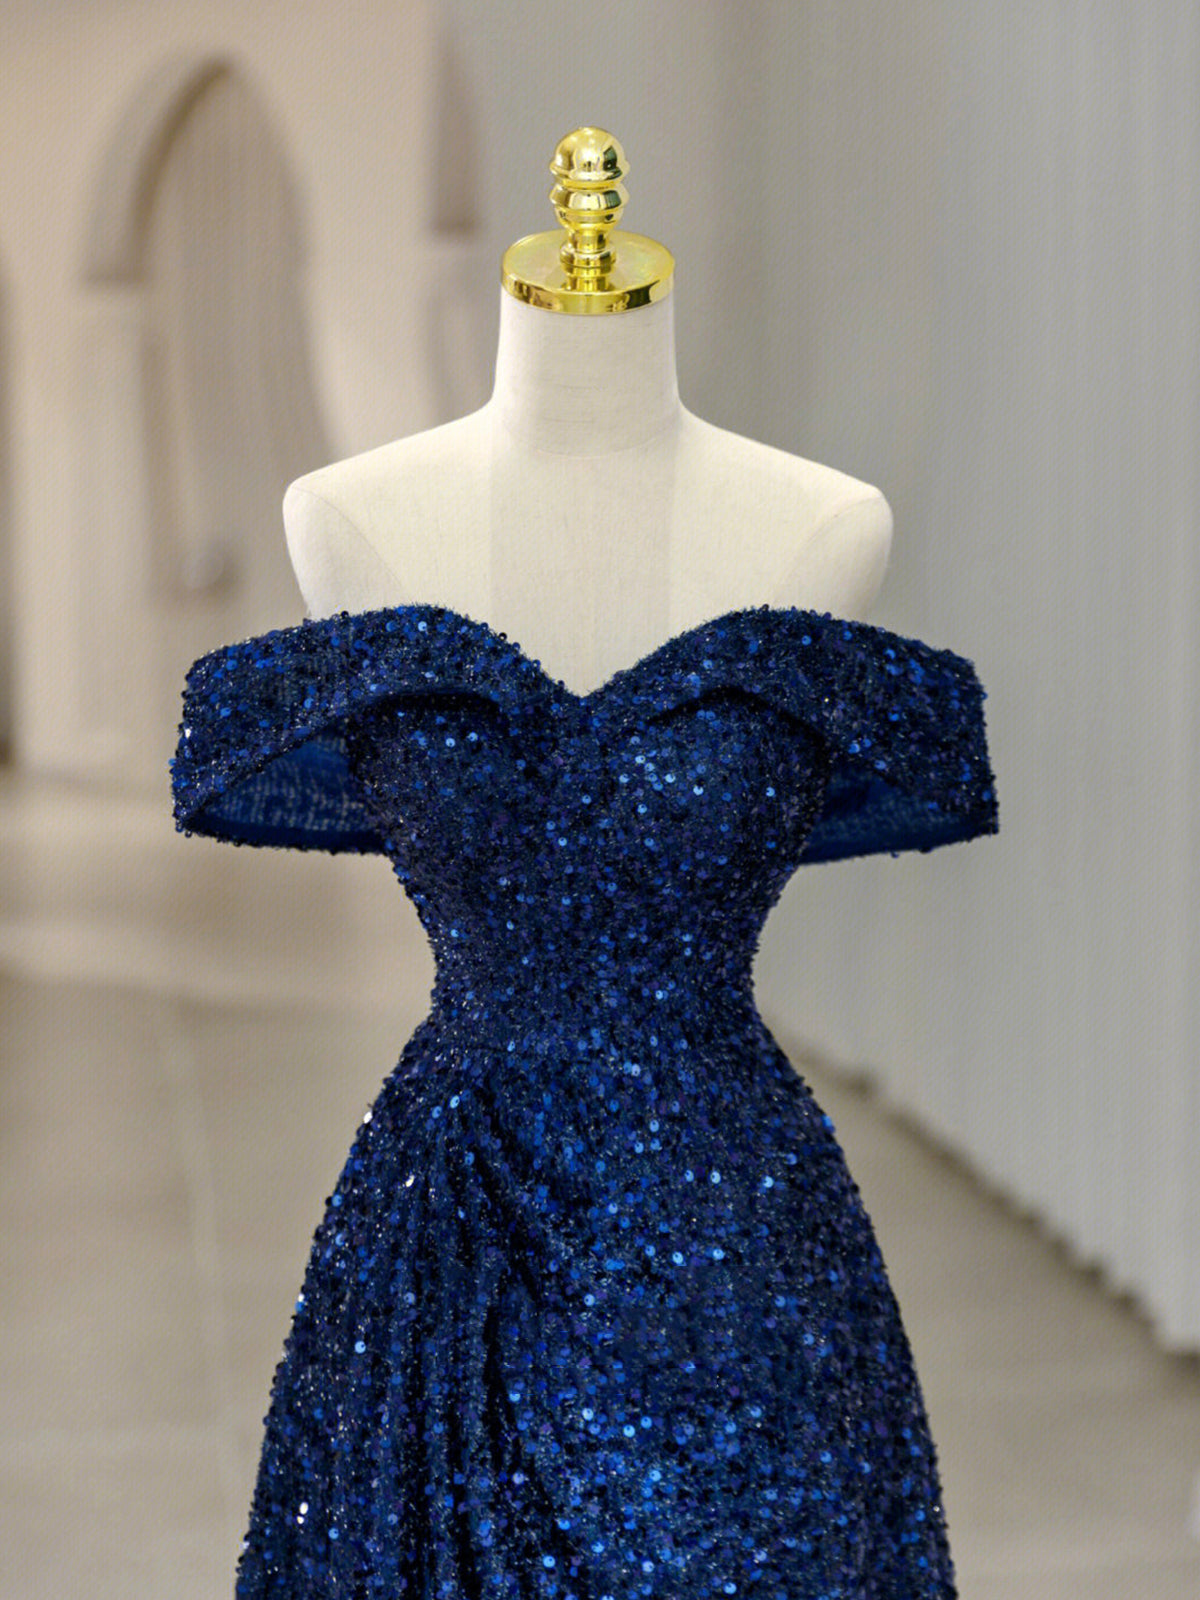 Royal Blue Sequins Long Prom Dress,Off the Shoulder Formal Evening Dresses